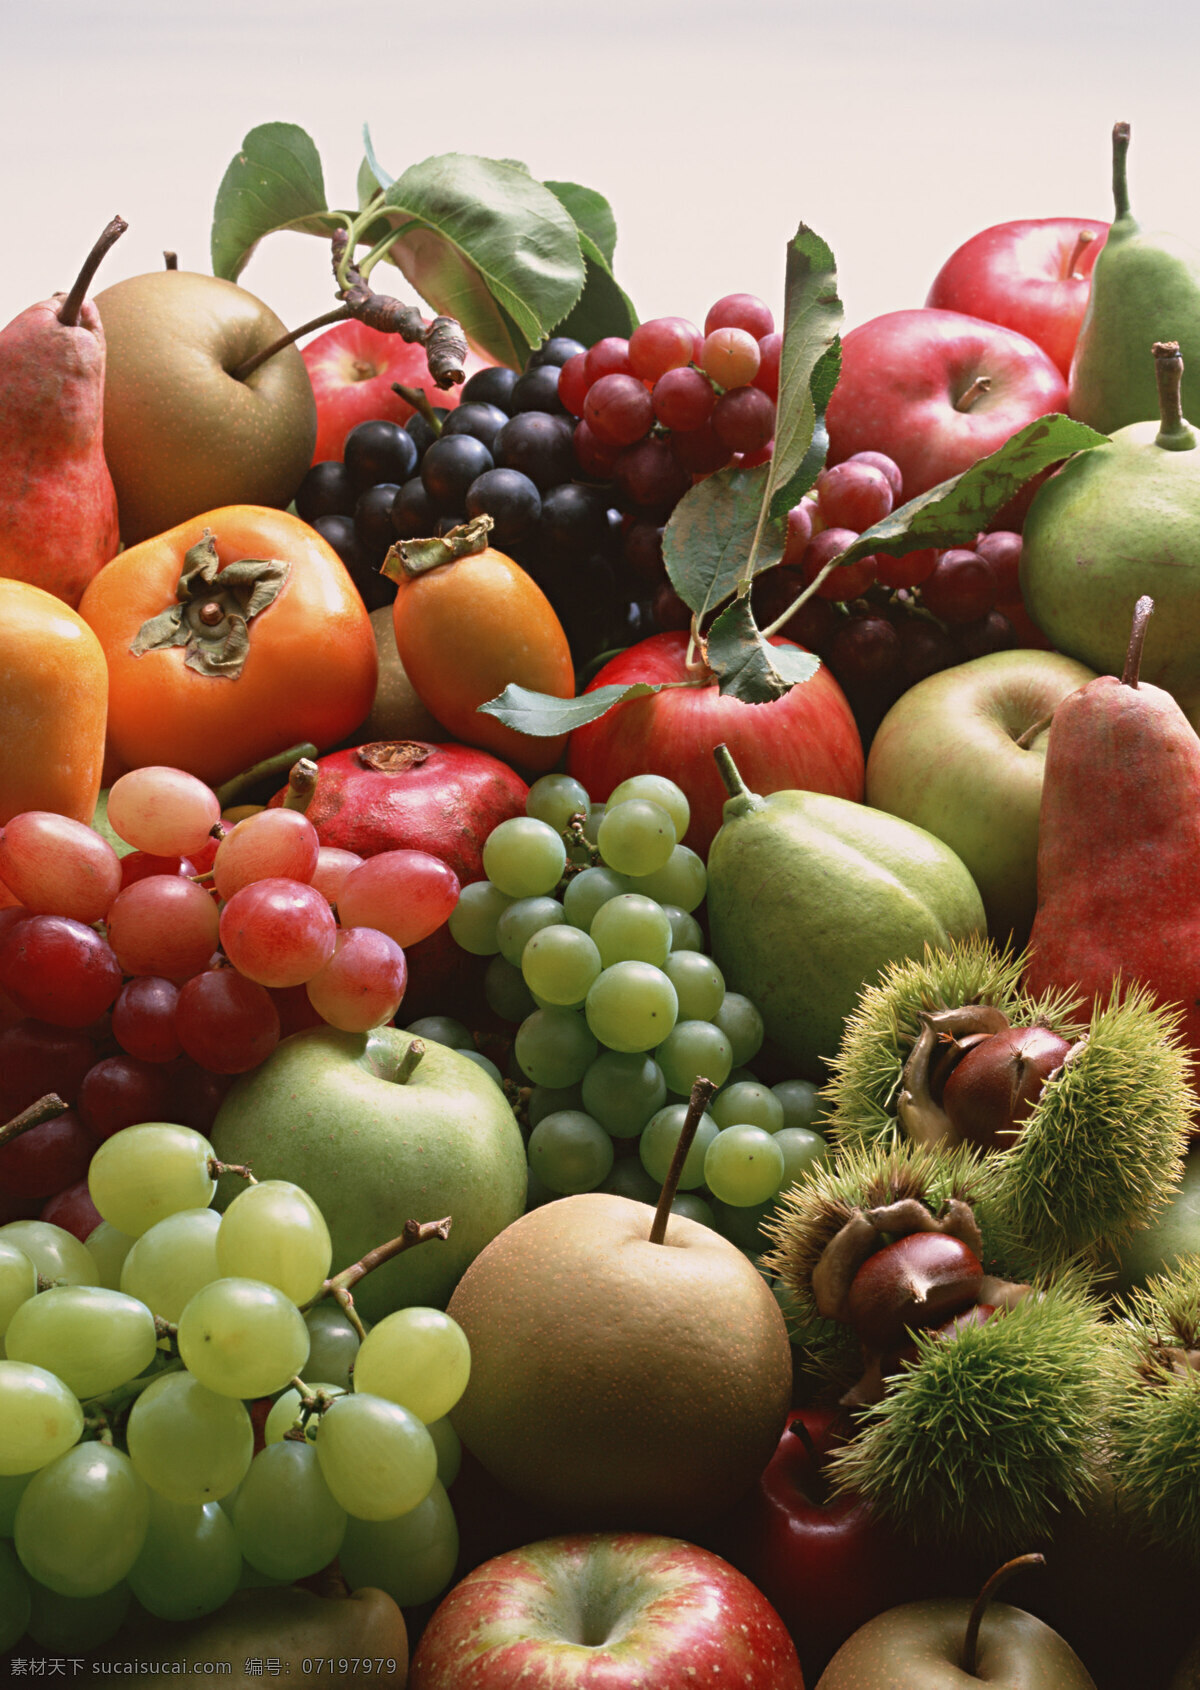 各种 水果 大全 新鲜水果 水果集锦 水果大全 葡萄 杮子 梨 苹果 红提 绿提 粟子 板粟 绿色水果 高清图片 水果素材 水果图片 餐饮美食